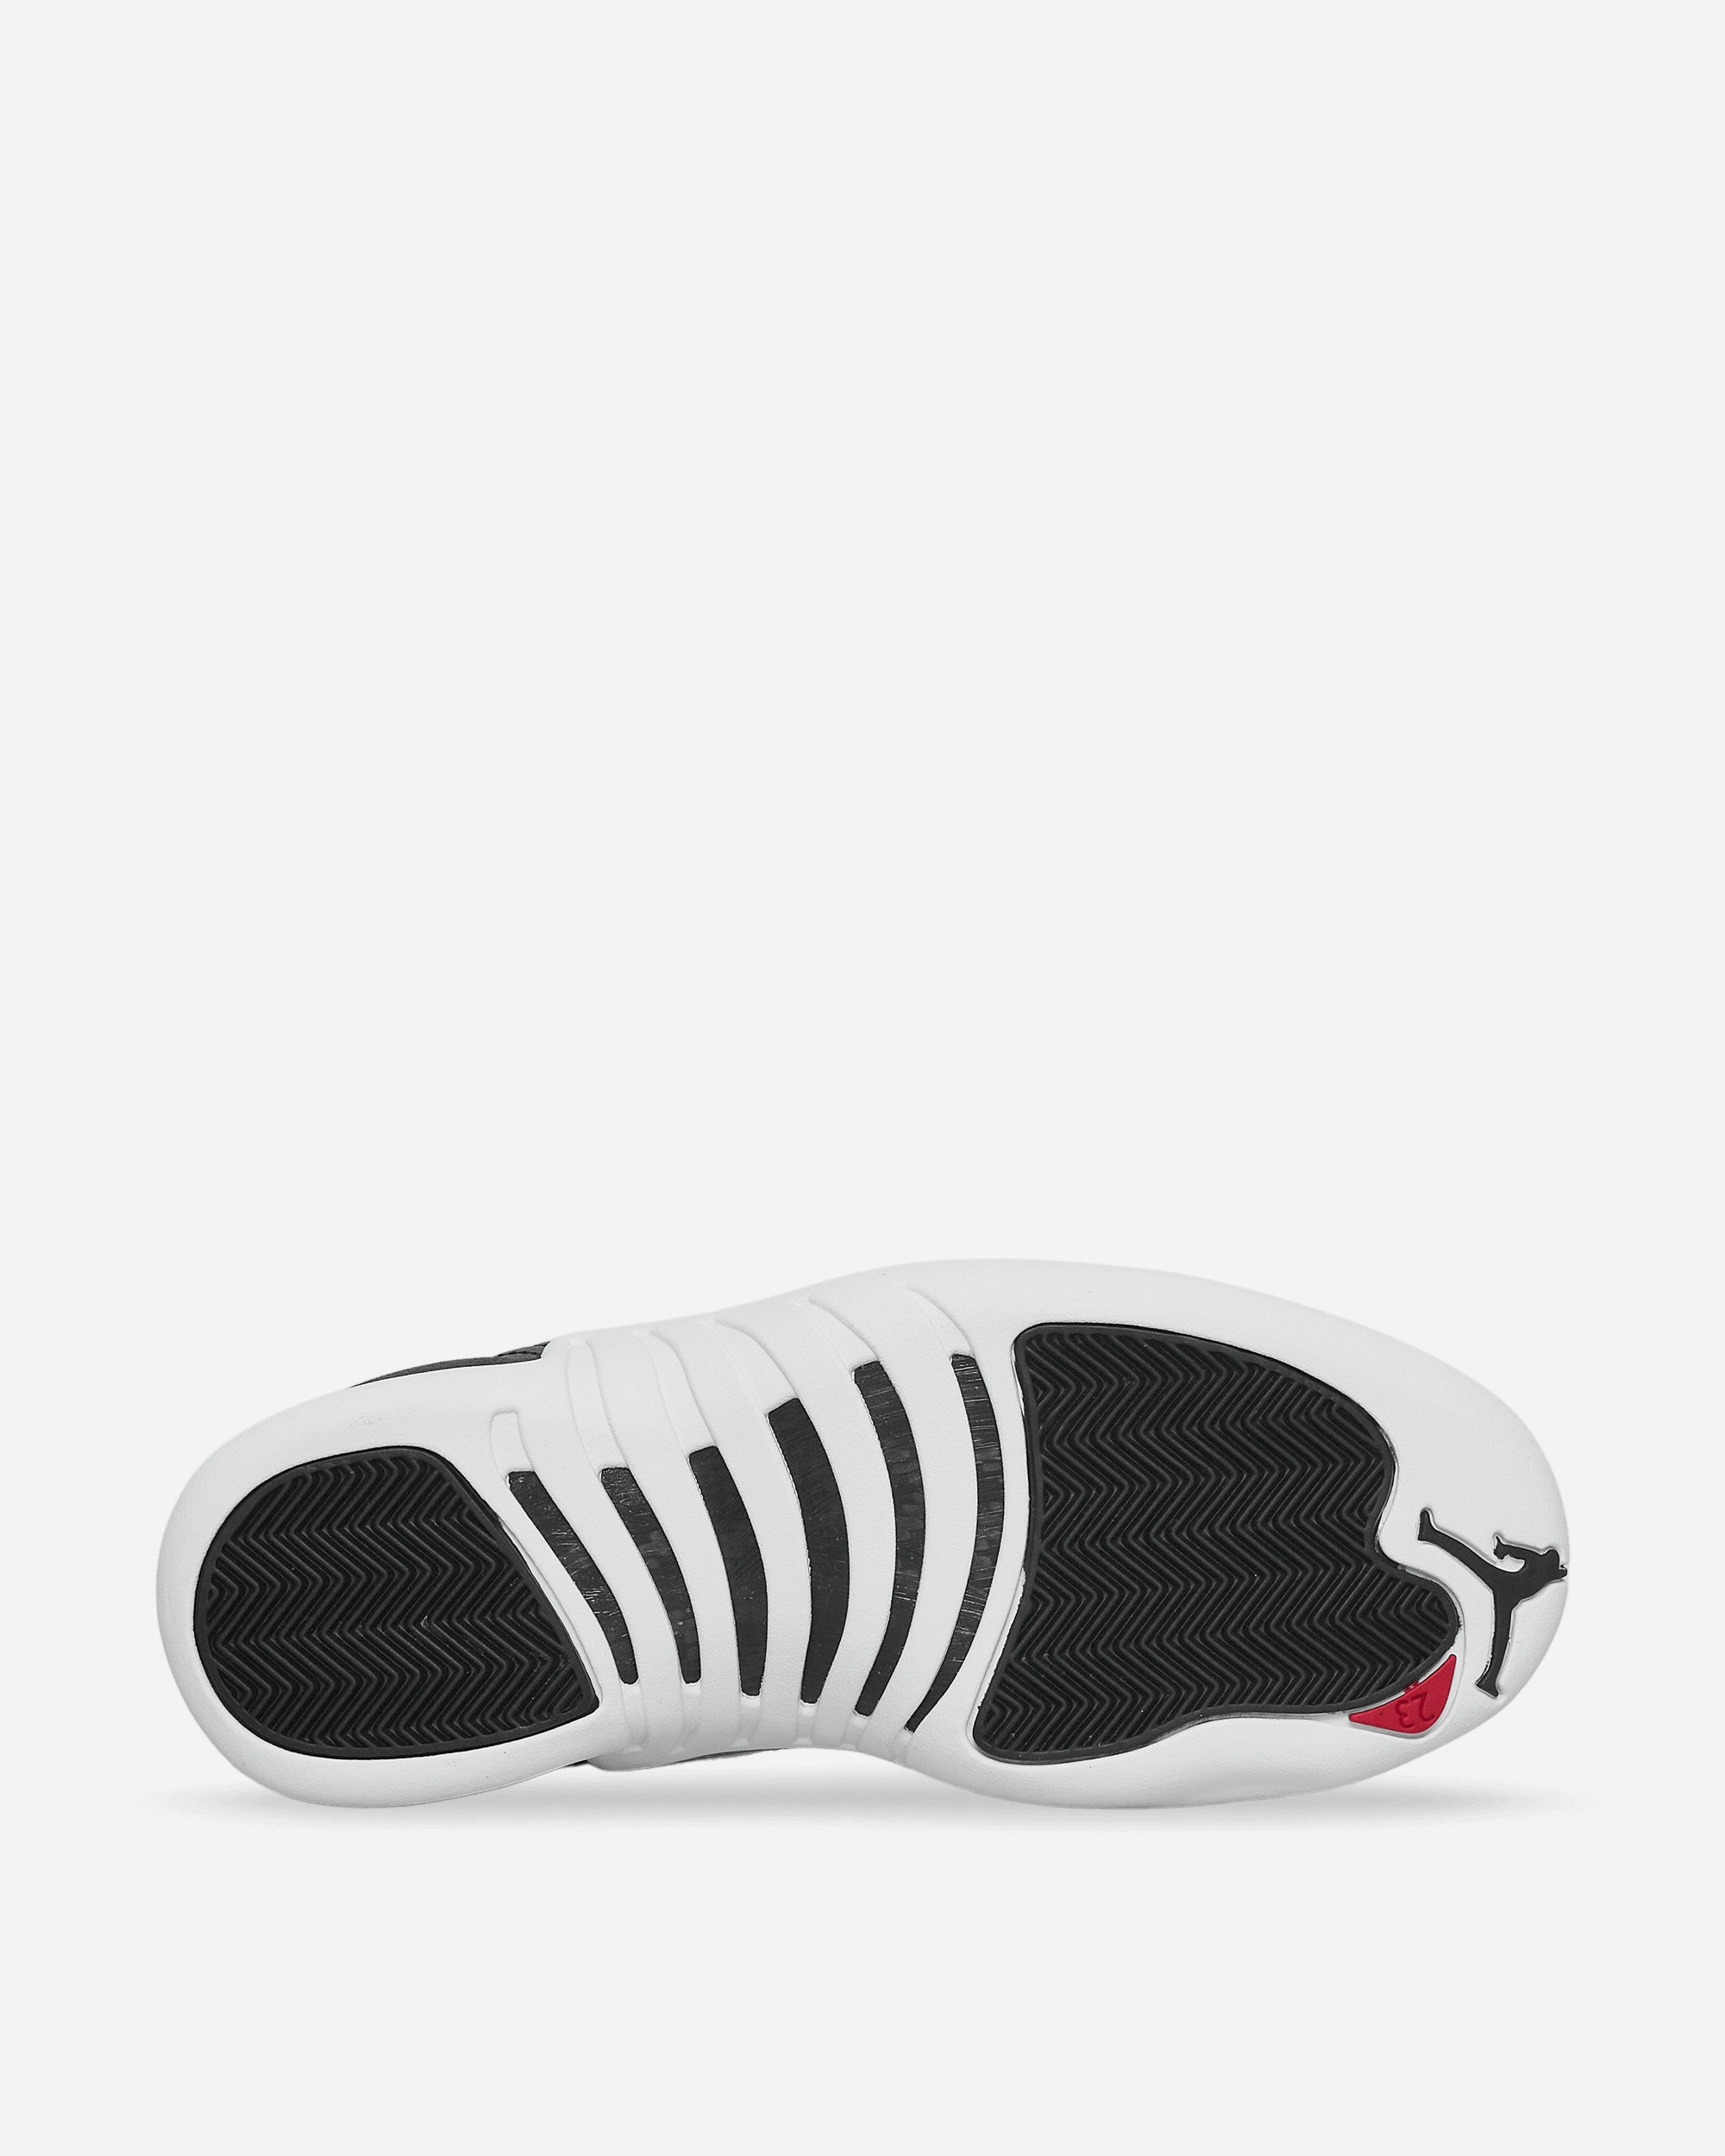 Nike Jordan Air Jordan 12 Retro Black/Varsity Red Sneakers Mid CT8013-006